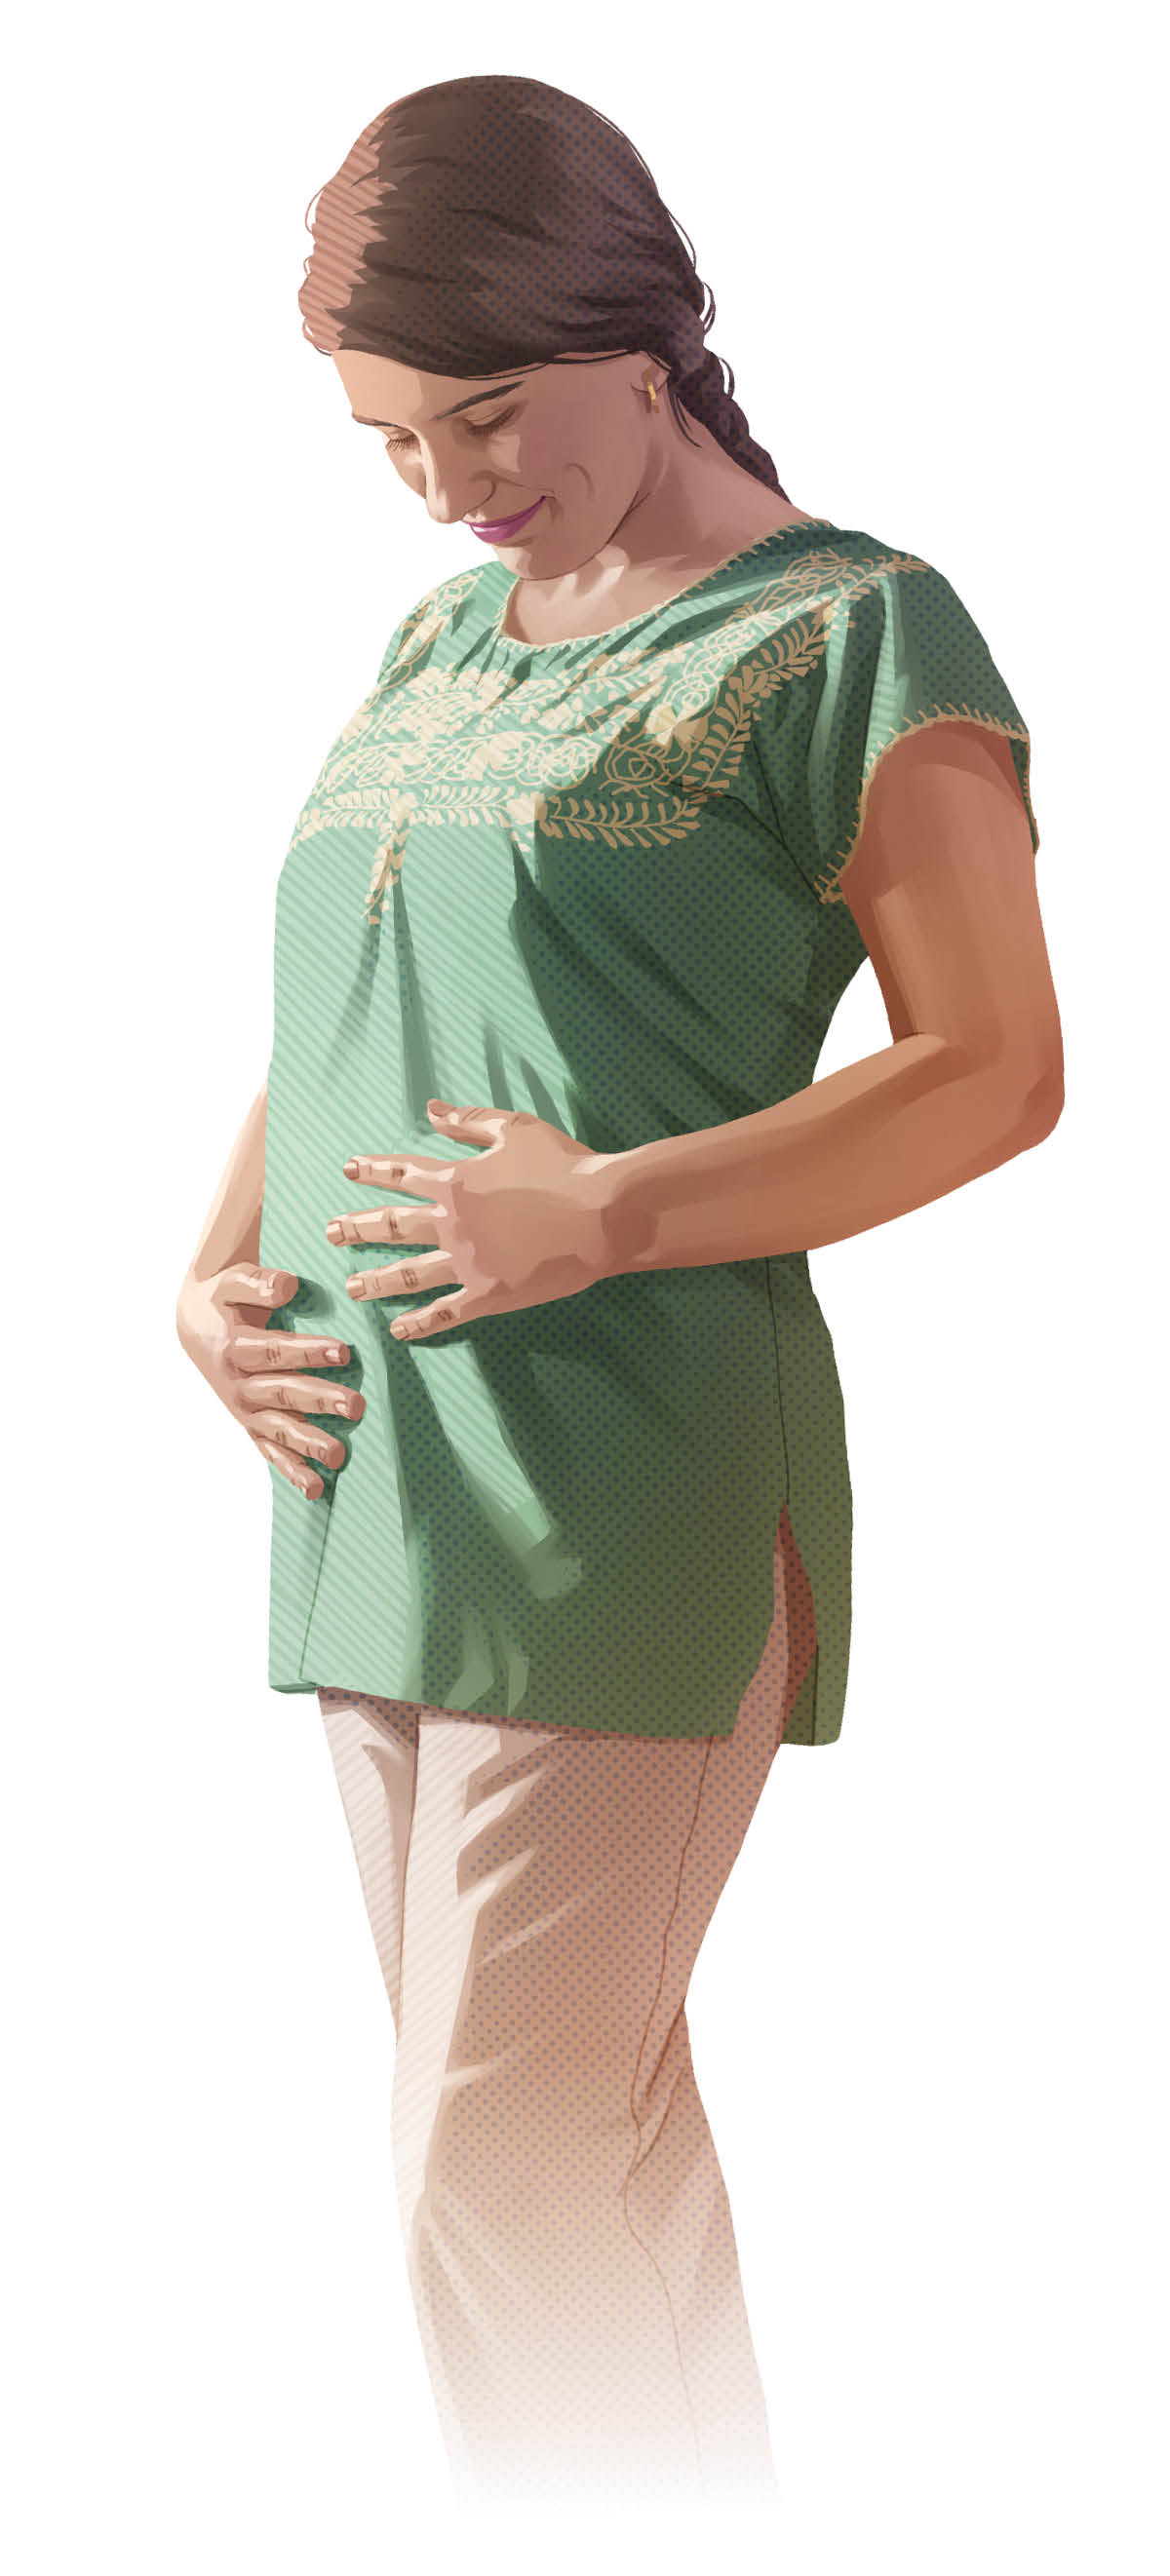 Una donna incinta si accarezza la pancia.